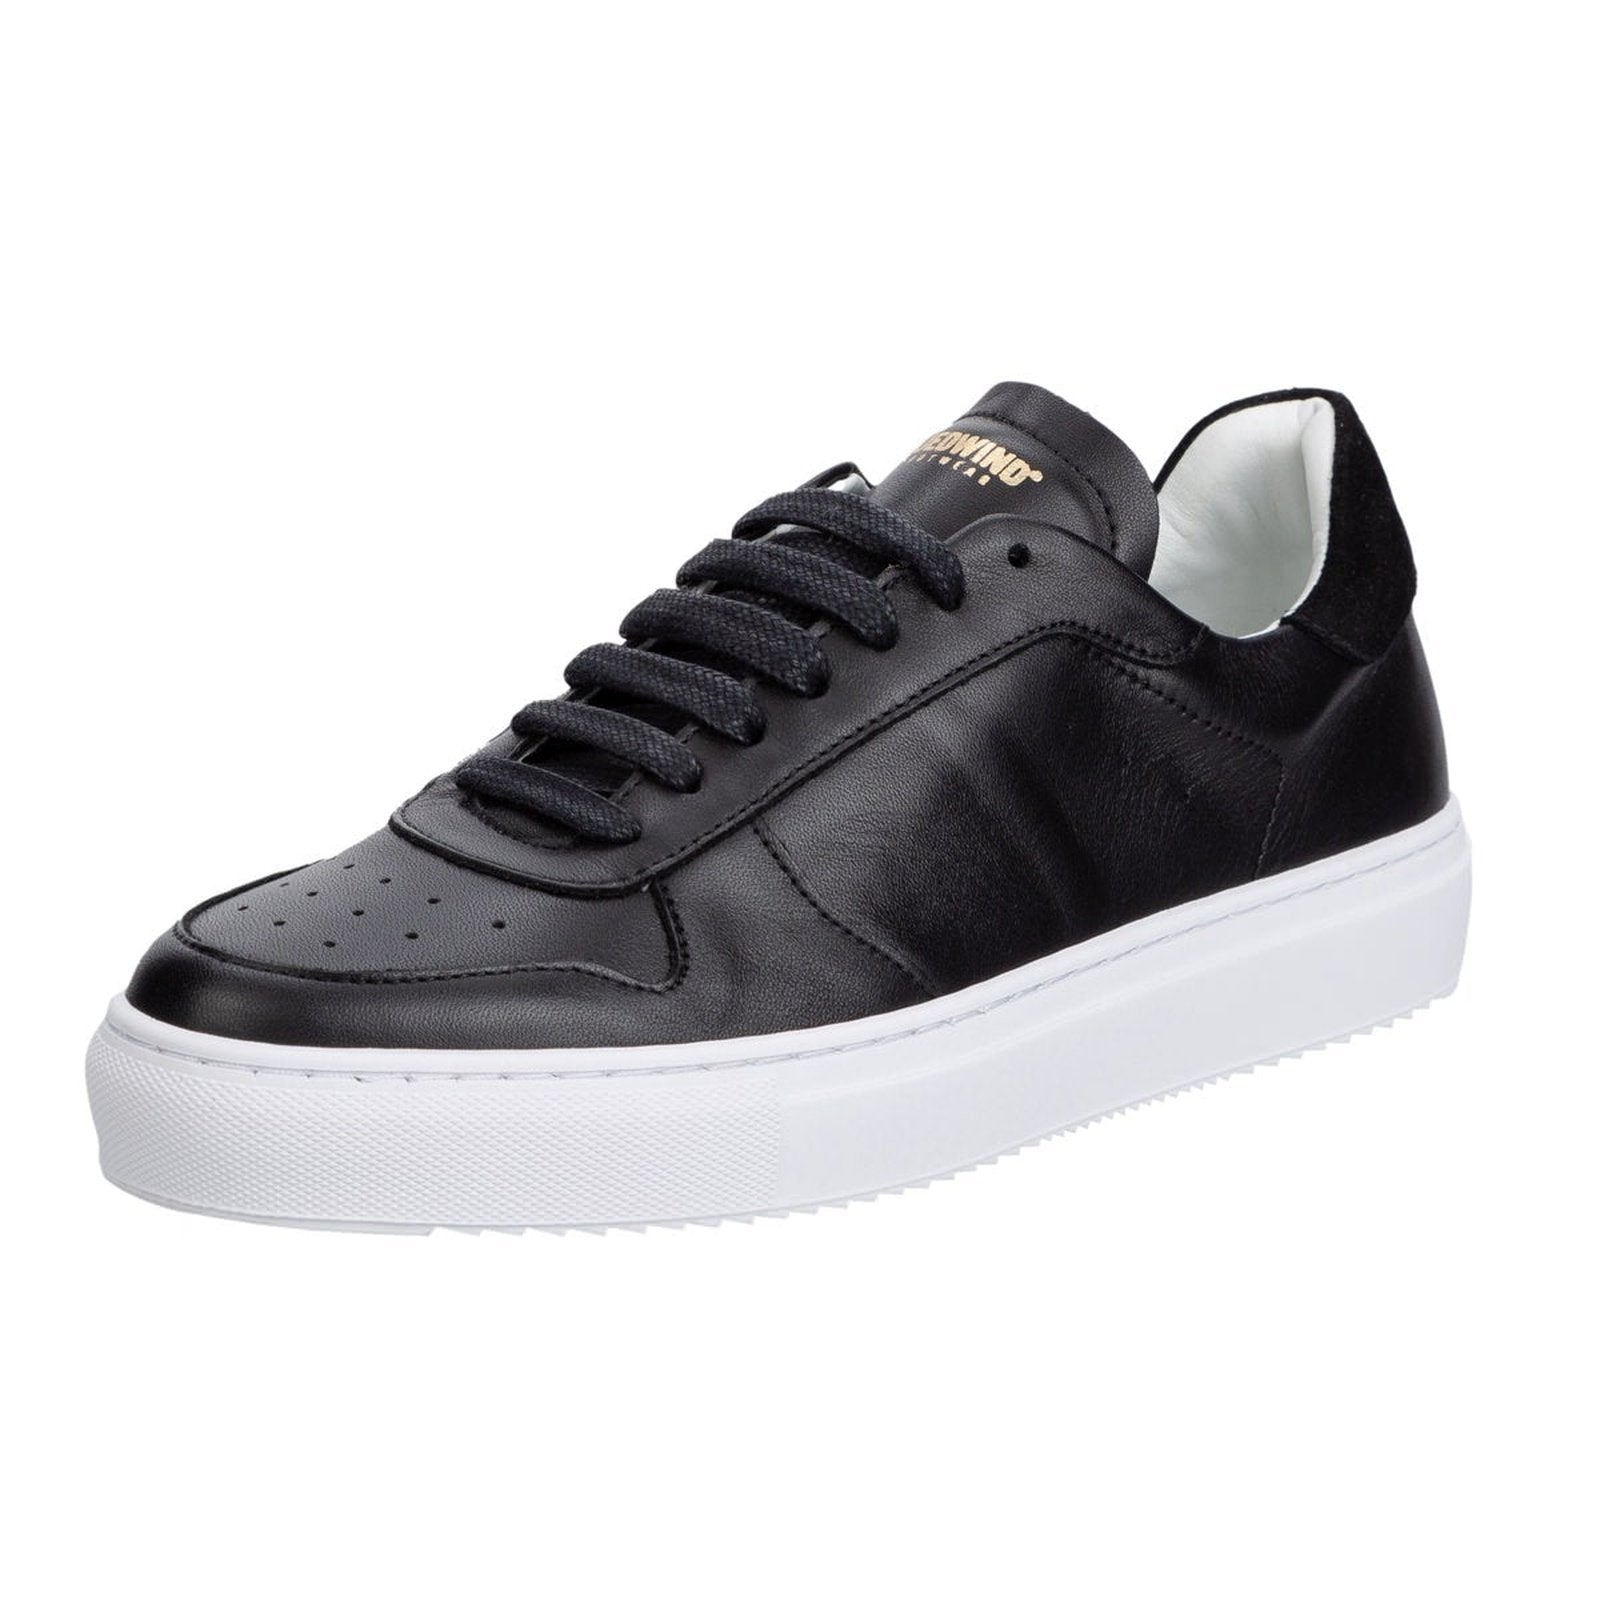 Suedwind "Copenhagen leather" eleganter & chicker Sneaker aus Leder - in schwarz, weiß, stonegrey - Gr.36-45 Suedwind bei SP-Reitsport